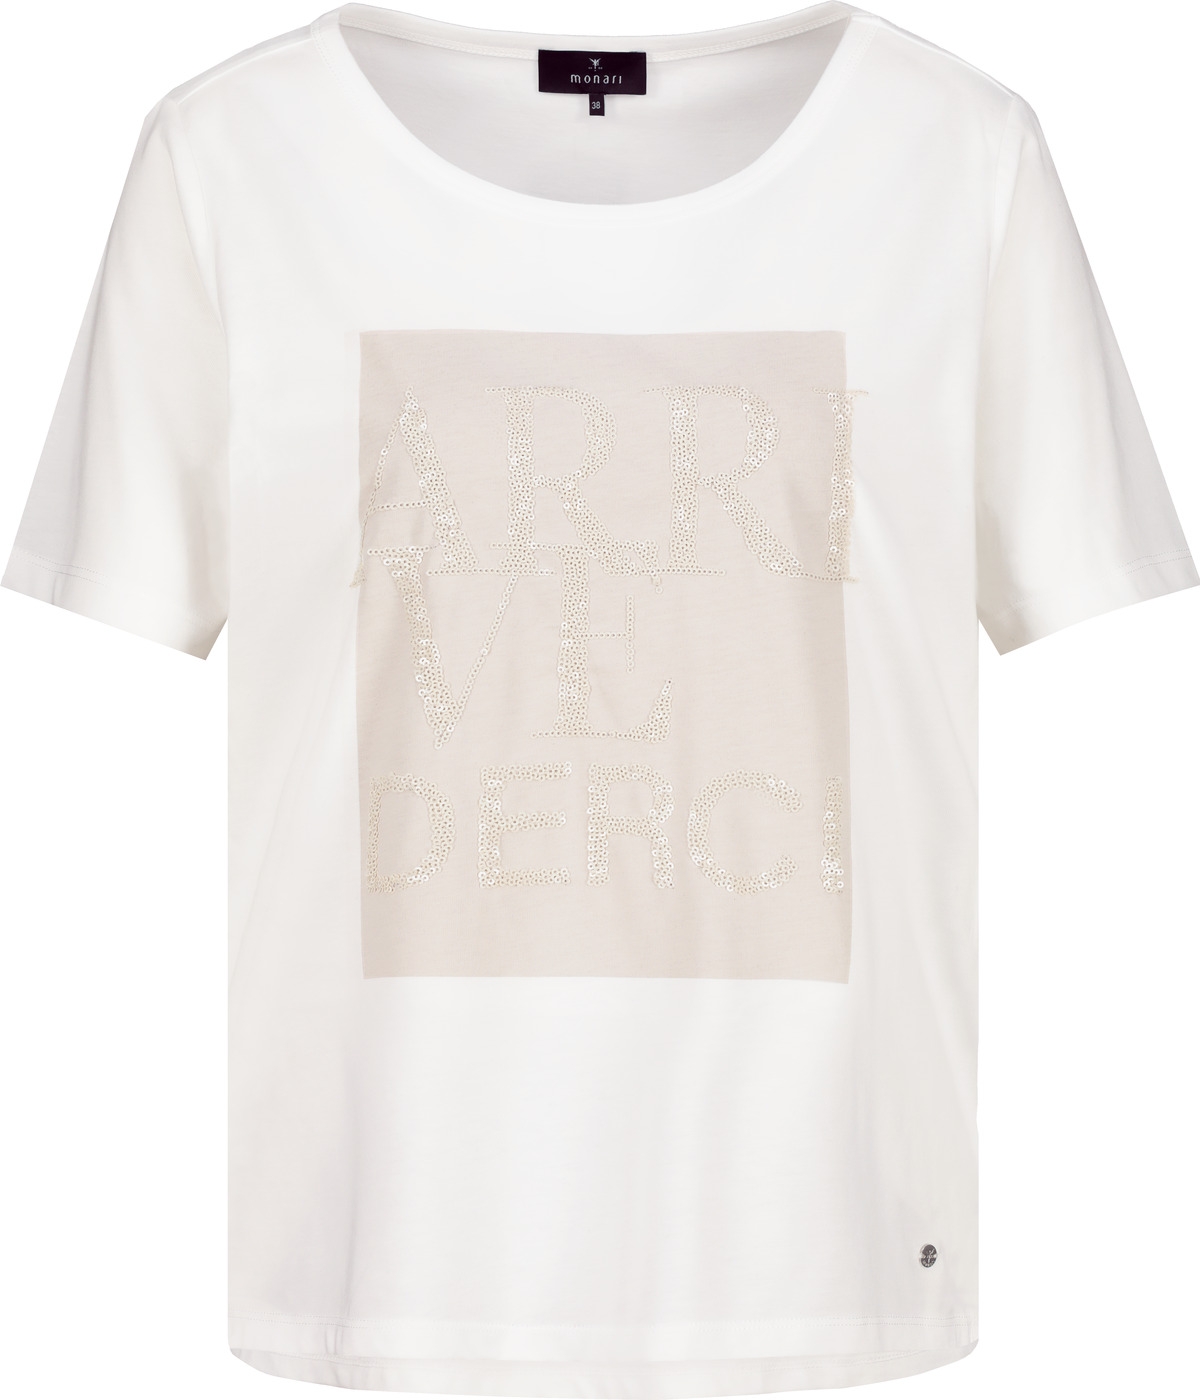 MONARI T-Shirt mit Pailletten Schrift 10751298